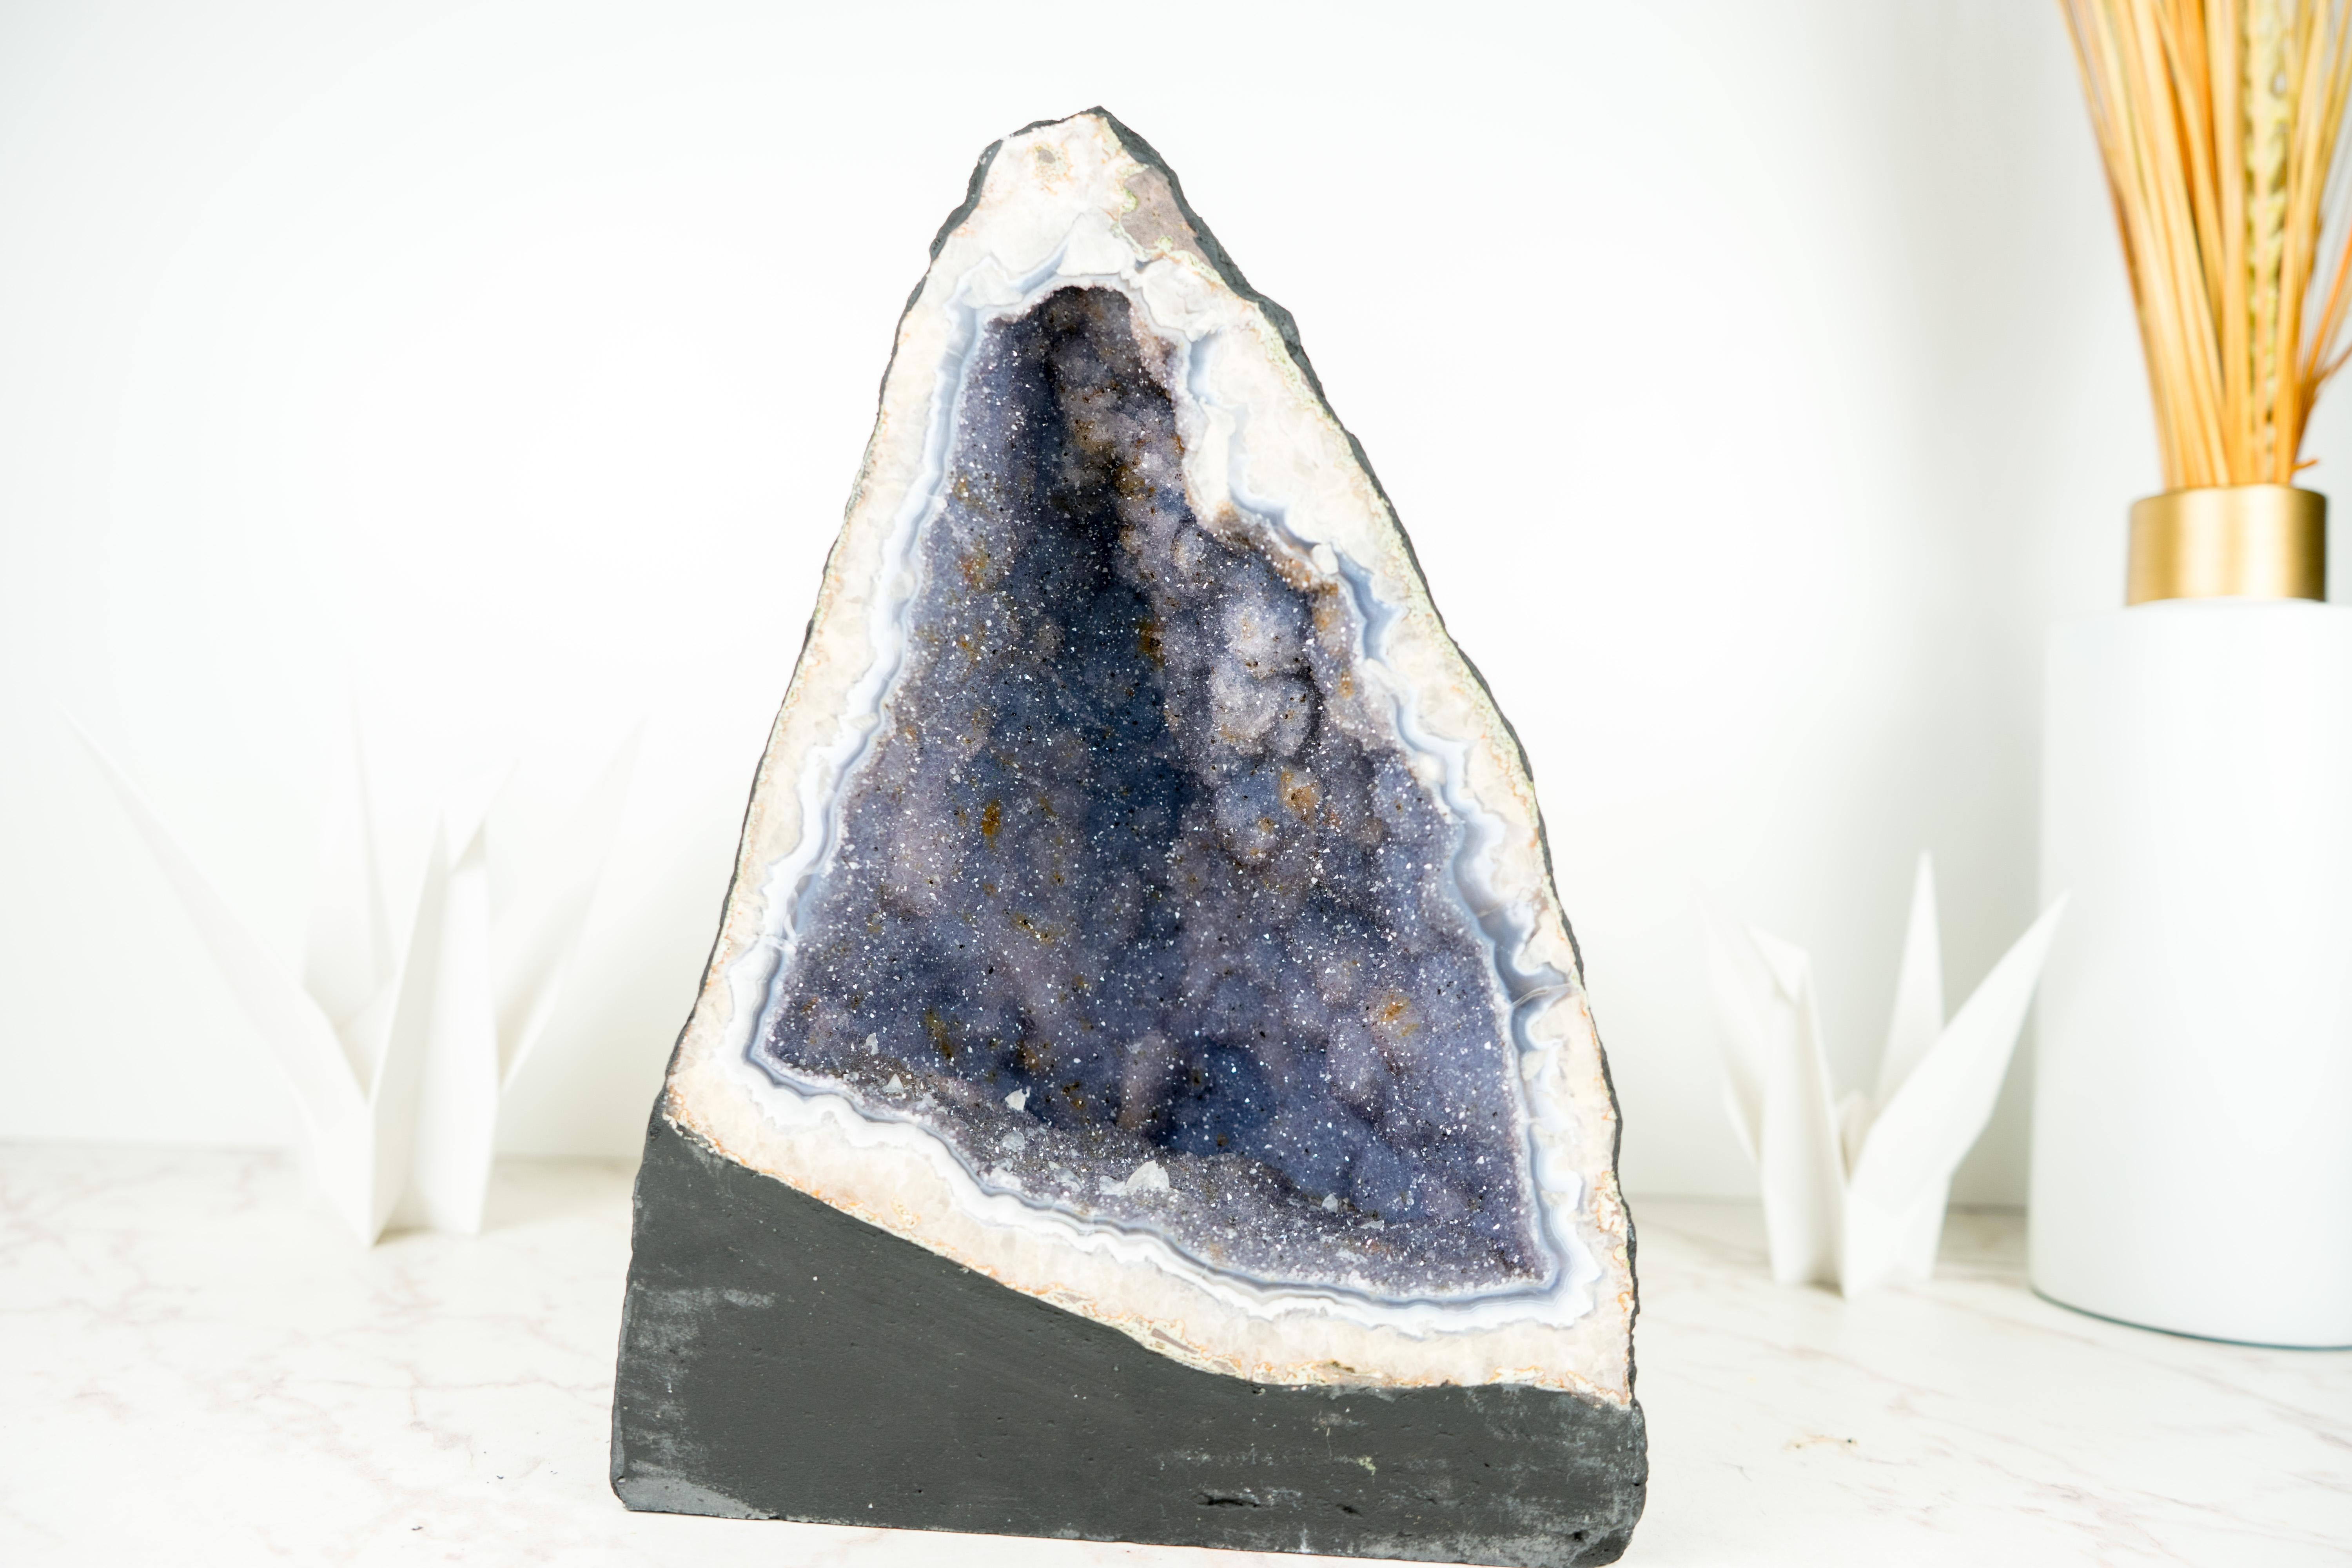 Seltene Achat-Amethyst-Geode, mit Lavendel-Galaxie-Amethyst-Druzy und Calcit

▫️ Beschreibung

Eine natürliche Achat-Geode mit seltenen Eigenschaften formt ein wahrhaft natürliches Kunstwerk. Blaue und weiße Achatbänder, lavendelfarbener